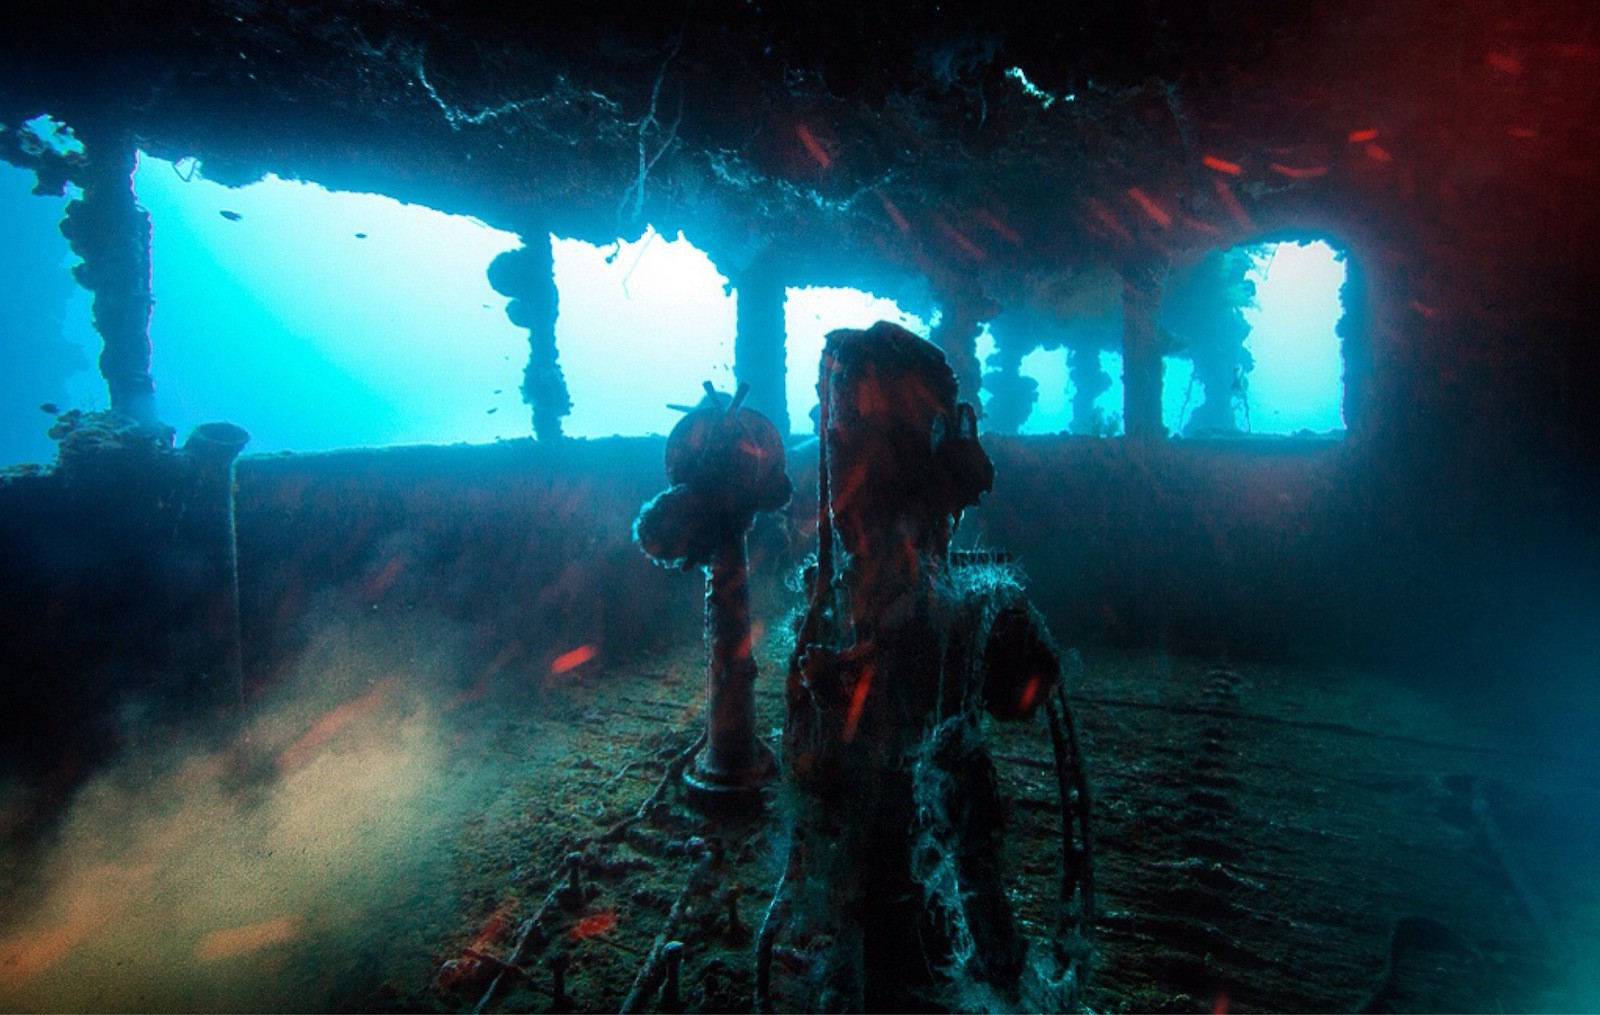 Близ атолла Чуук находится самое крупное подводное кладбище военной техники. Вся она была уничтожена в феврале 1944 года, во время операции Хэйлстоун. Моря и океаны, интересное, подводный мир